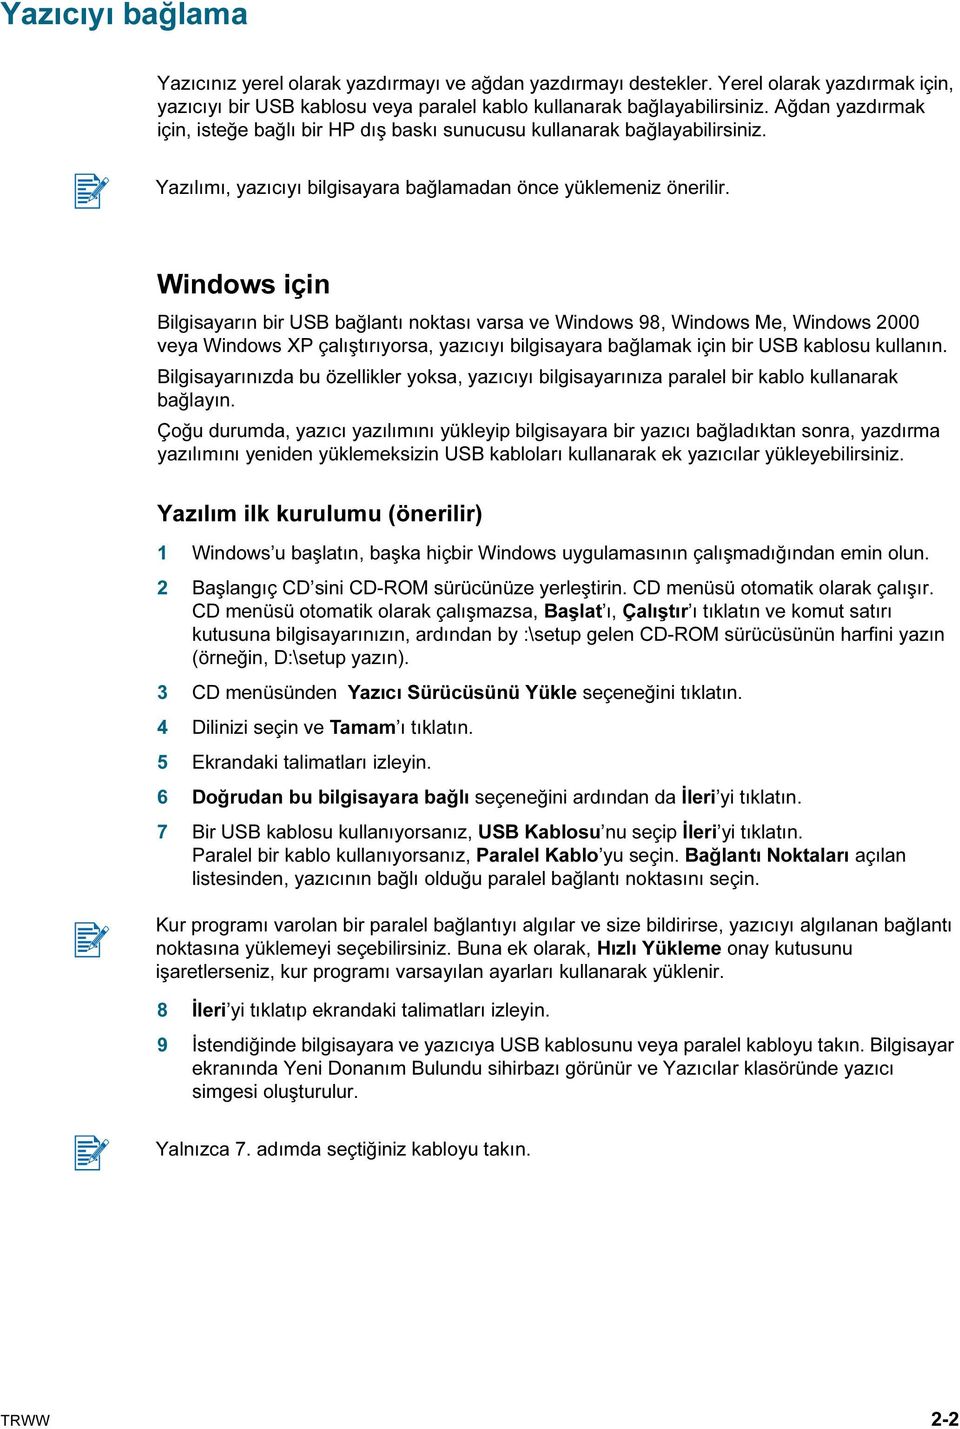 Windows için Bilgisayarın bir USB bağlantı noktası varsa ve Windows 98, Windows Me, Windows 2000 veya Windows XP çalıştırıyorsa, yazıcıyı bilgisayara bağlamak için bir USB kablosu kullanın.